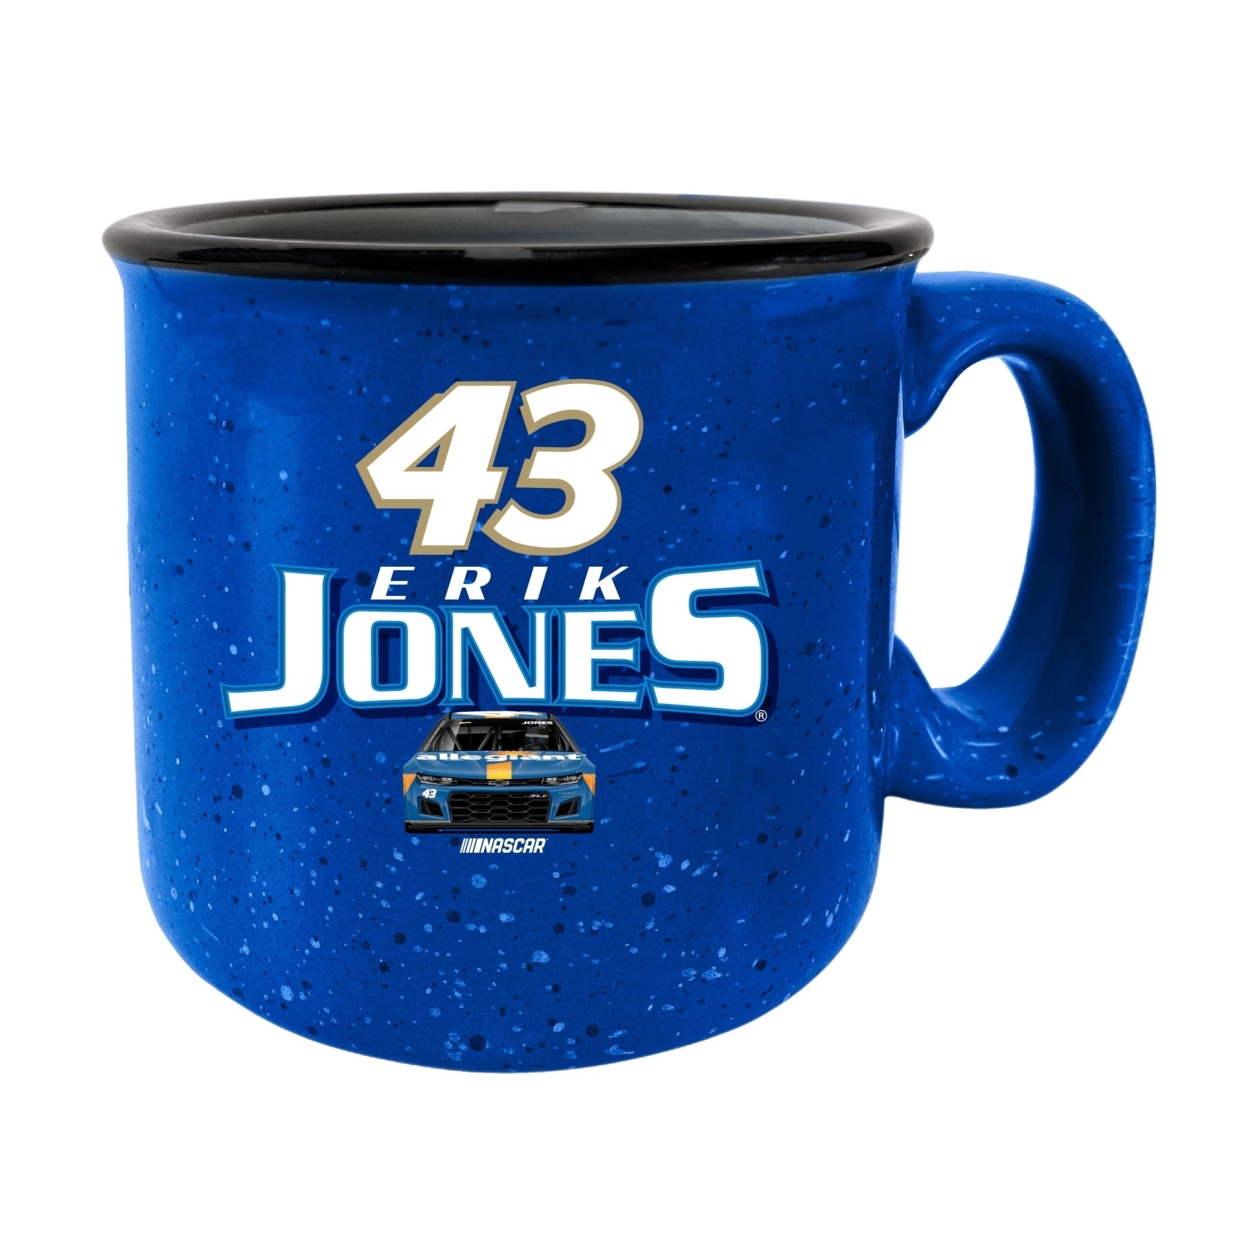 #43 Erik Jones Officially Licensed Ceramic Camper Mug 16oz - Black